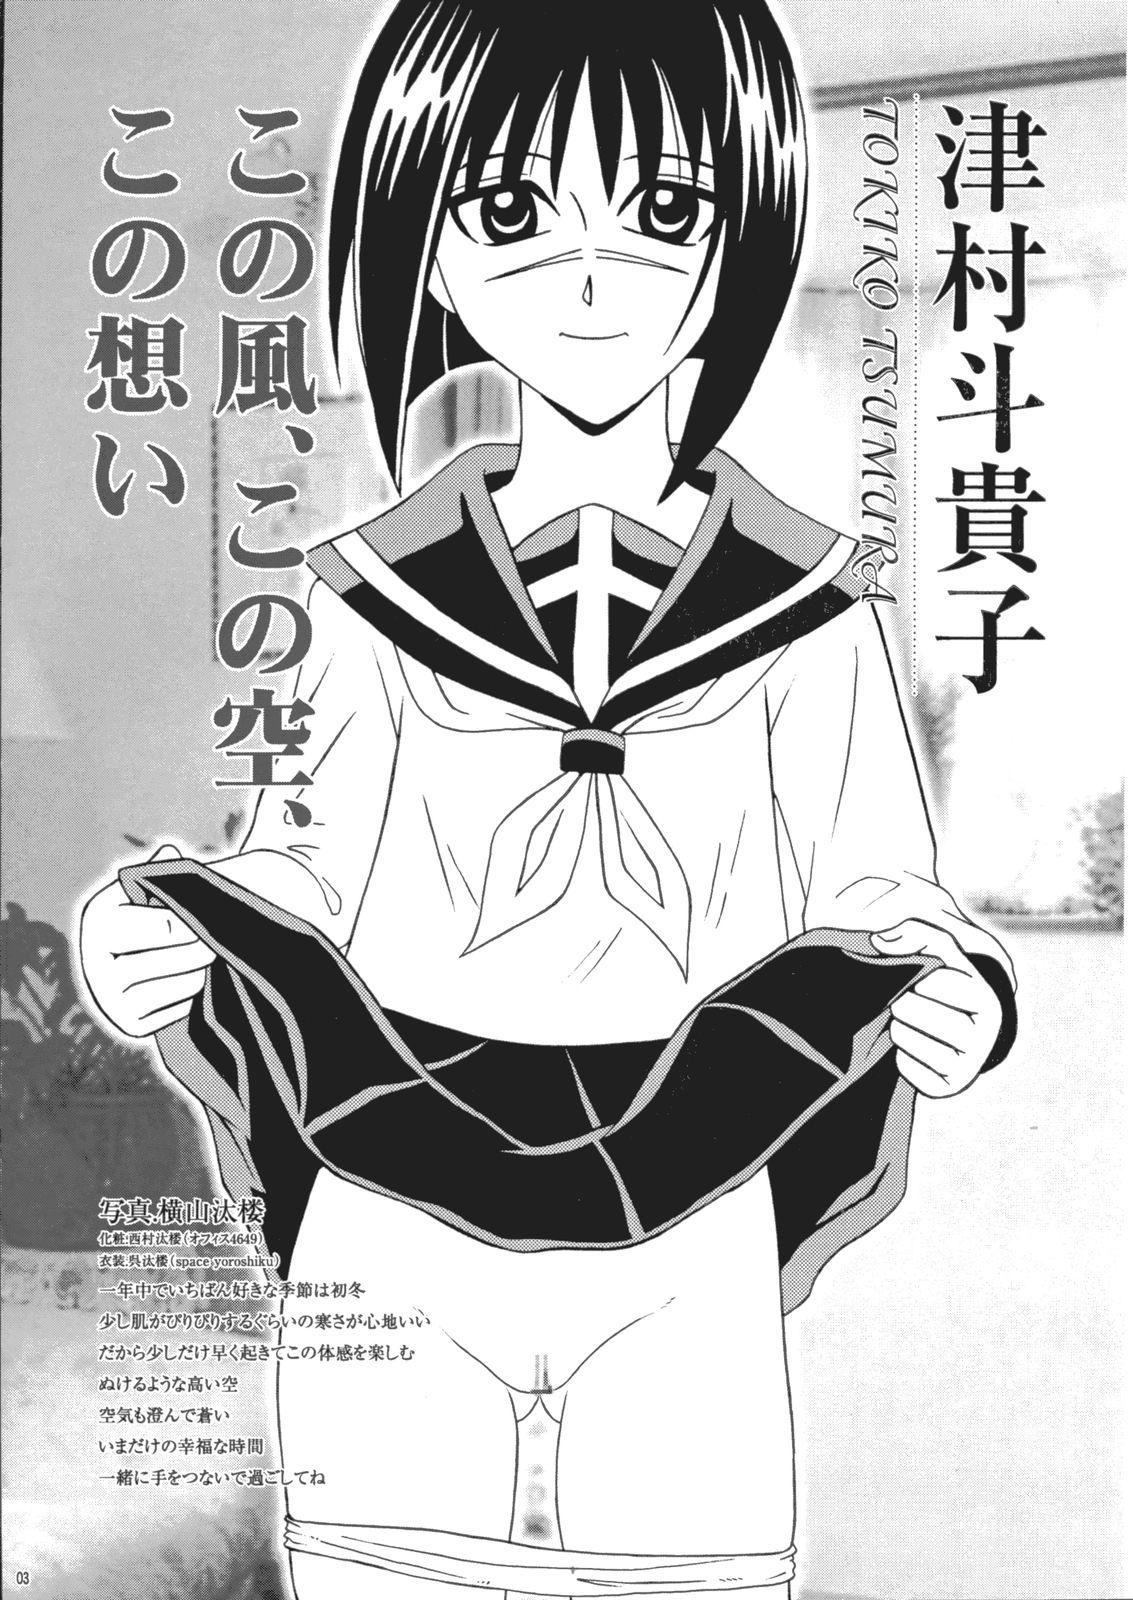 European Saku-chan Kurabu Vol.03 - Naruto One piece Ichigo 100 Is Hikaru no go Ruiva - Page 2